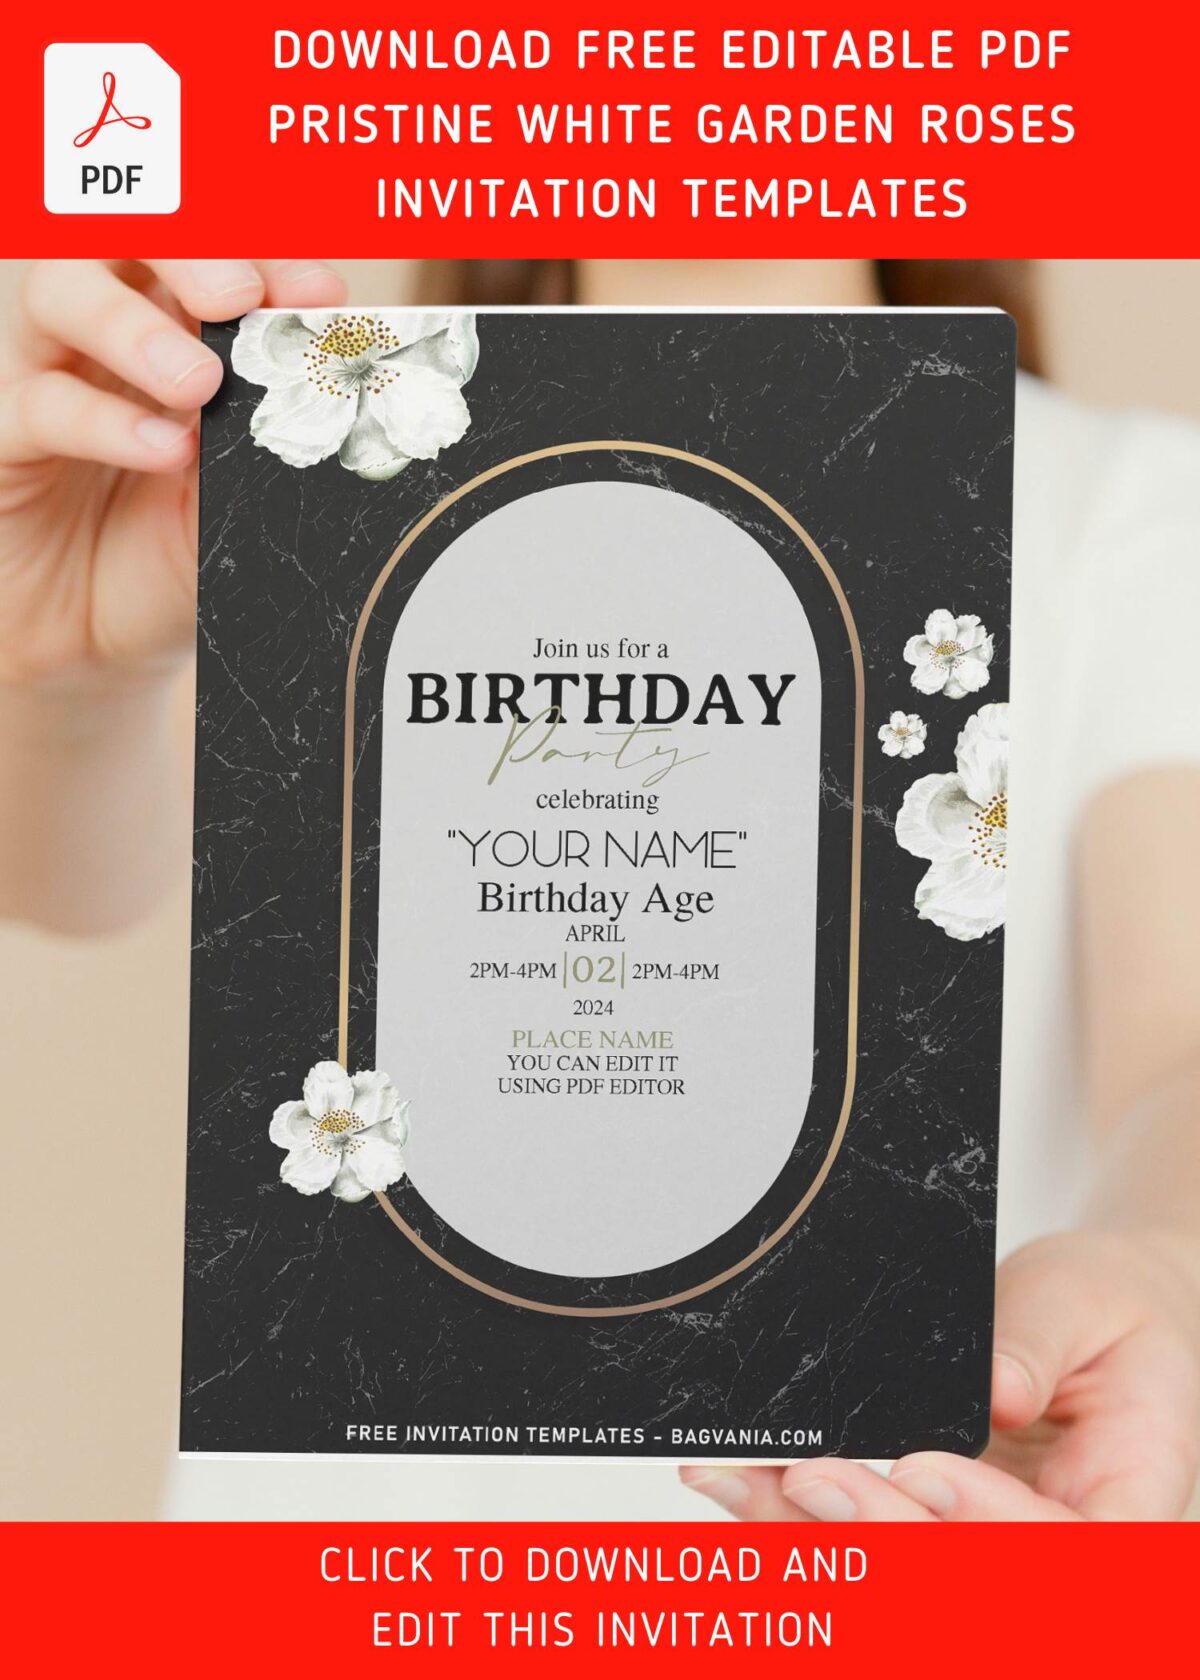 (Free Editable PDF) Pristine White Garden Rose Birthday Invitation Templates with white poppy